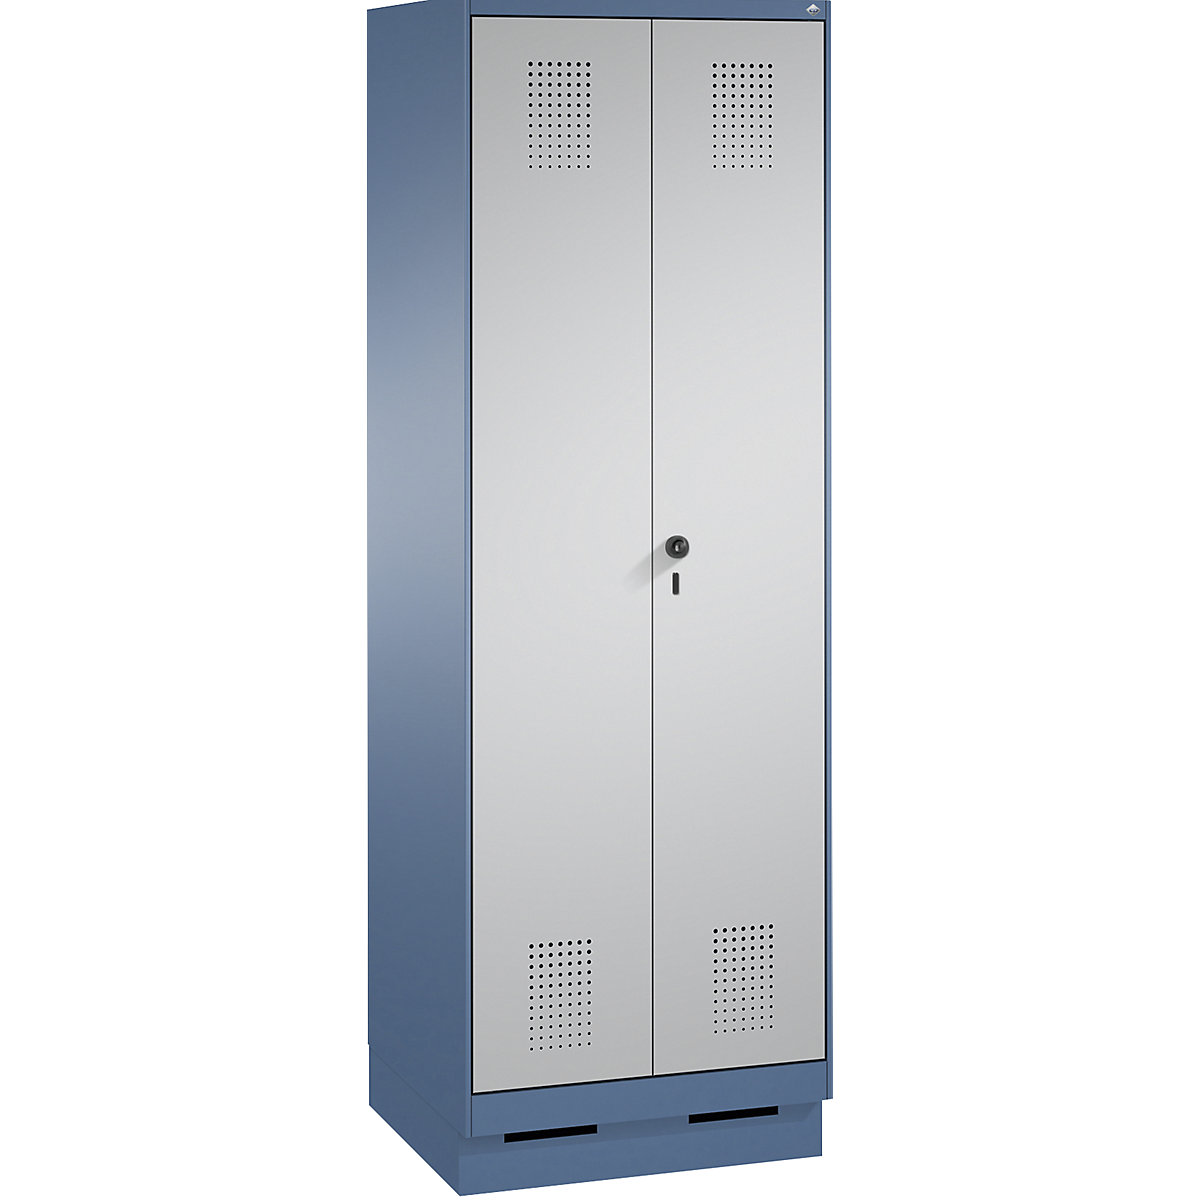 Armário de armazenamento EVOLO, portas que fecham na direção uma da outra, com rodapé – C+P, 1 compartimento, largura 600 mm, com 4 prateleiras, azul distante / cinza alumínio-13